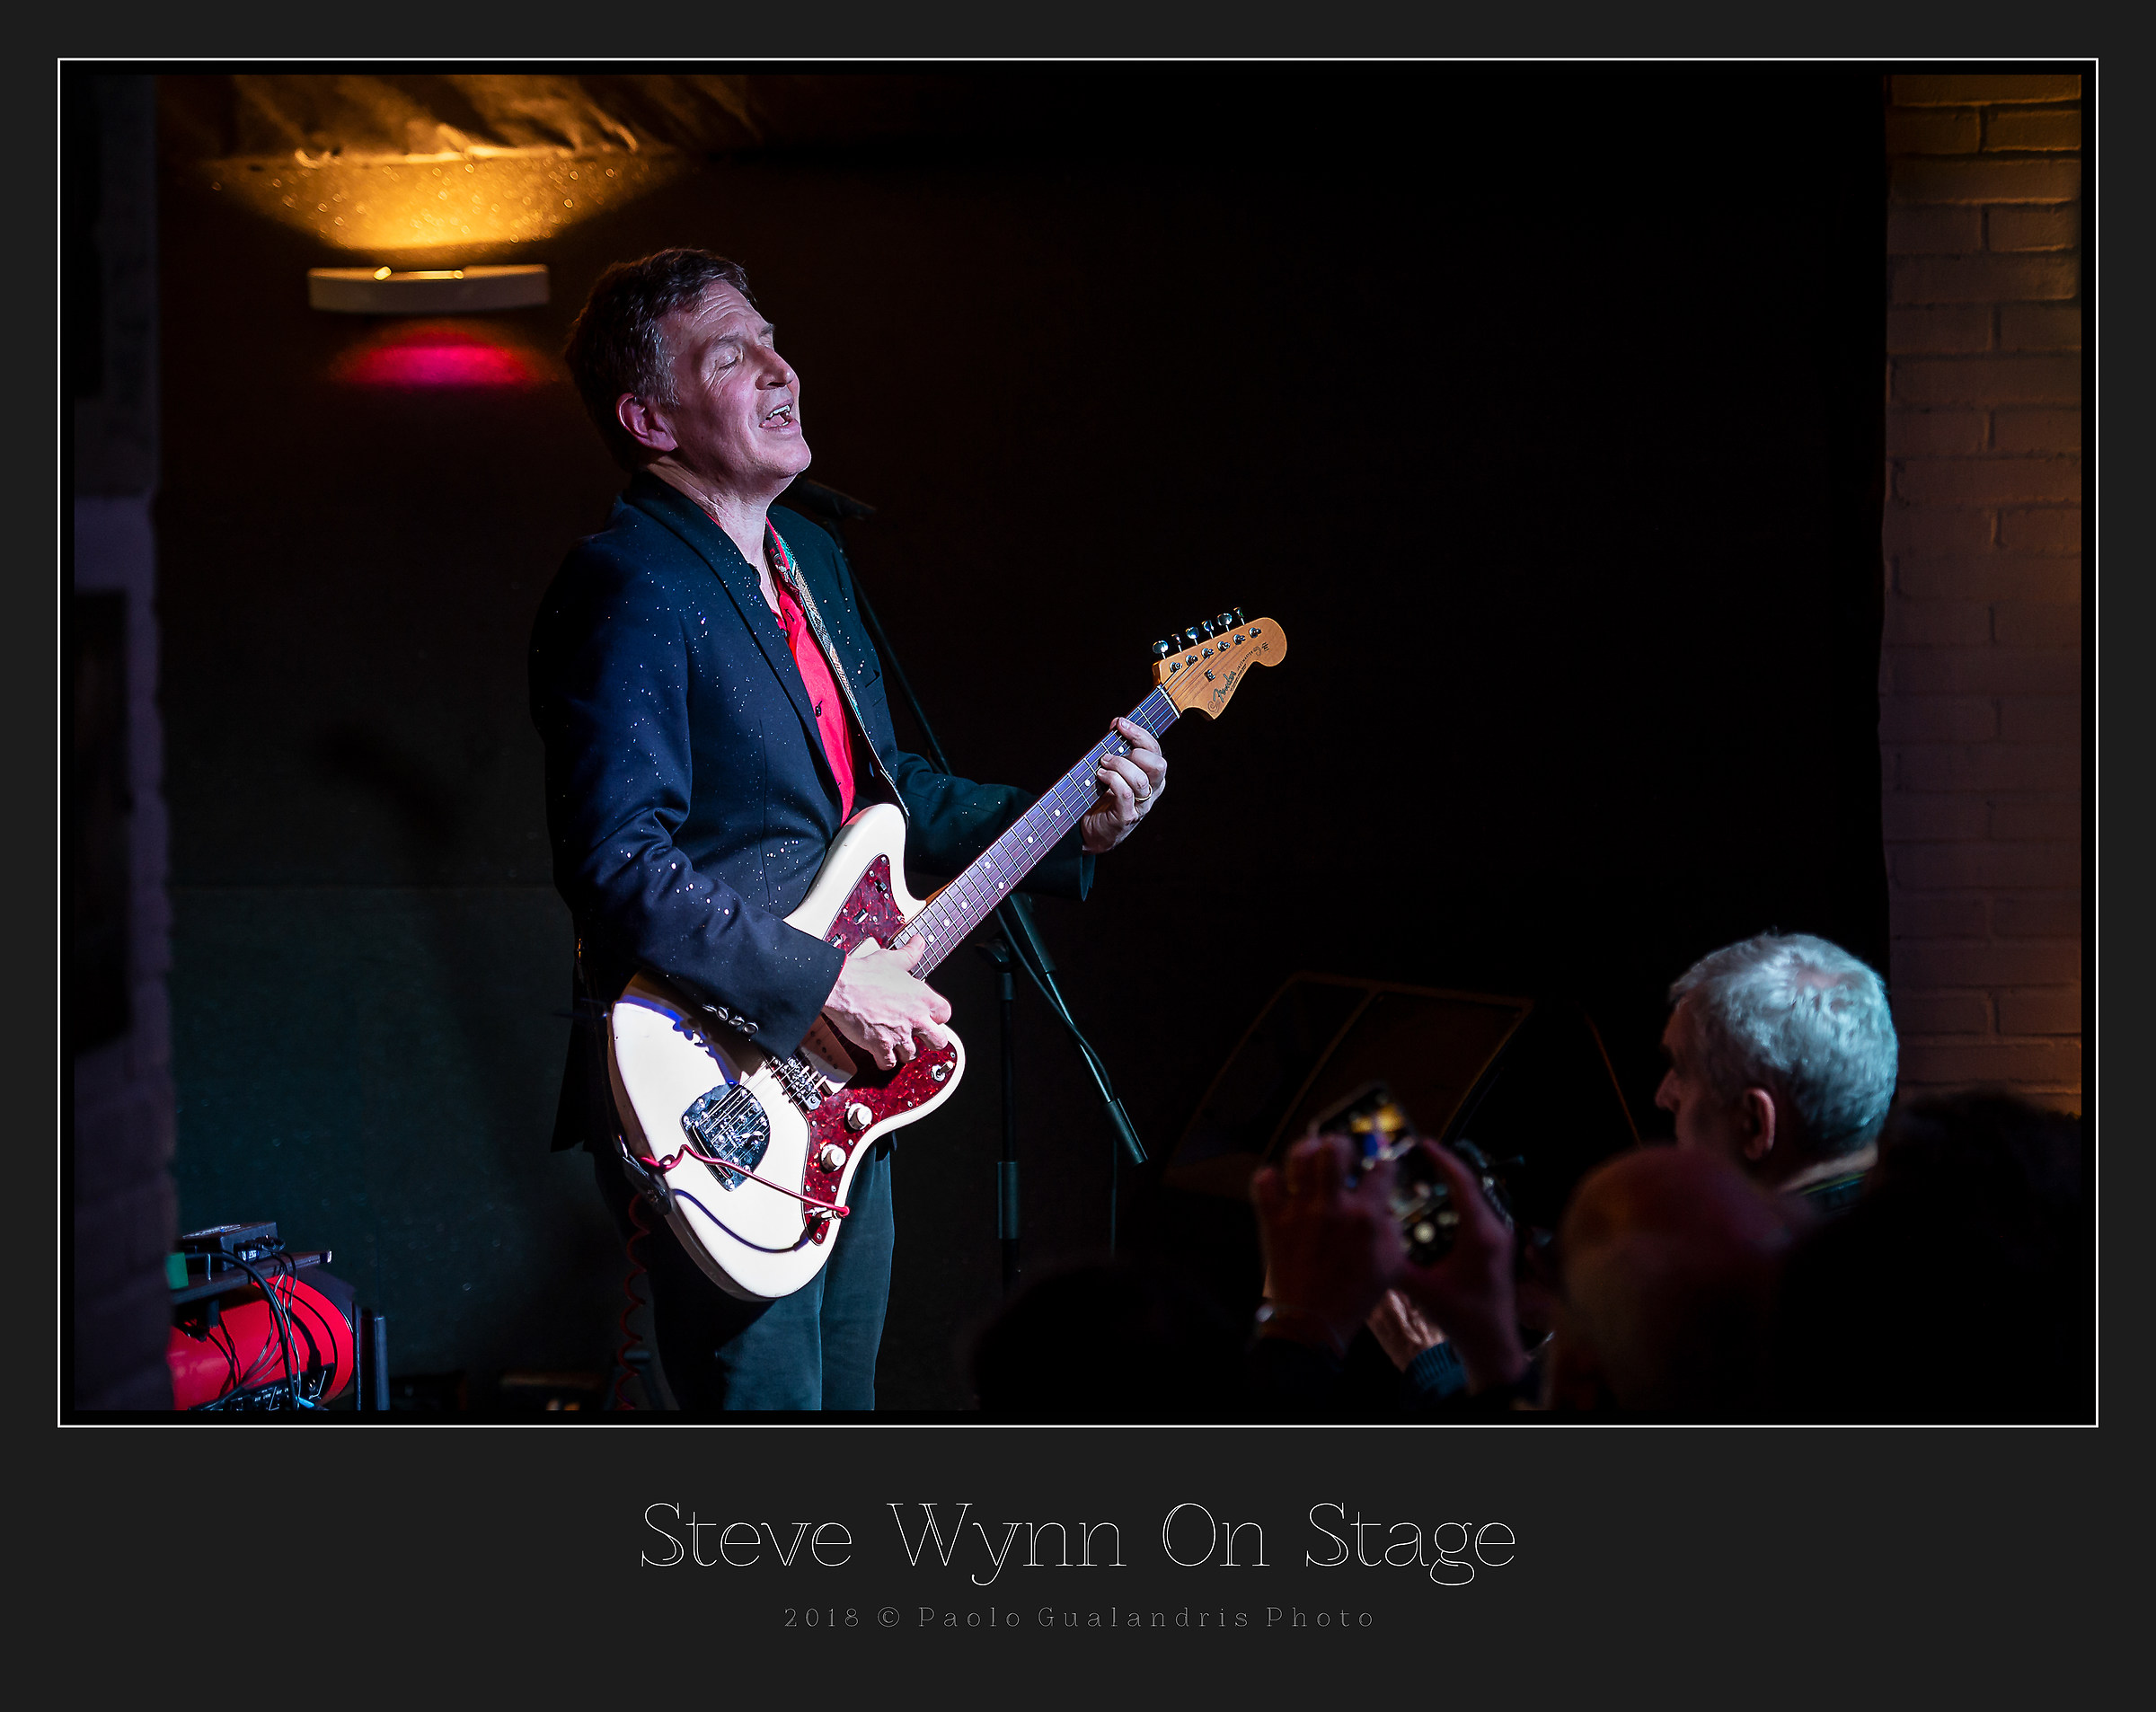 Steve Wynn On Stage...